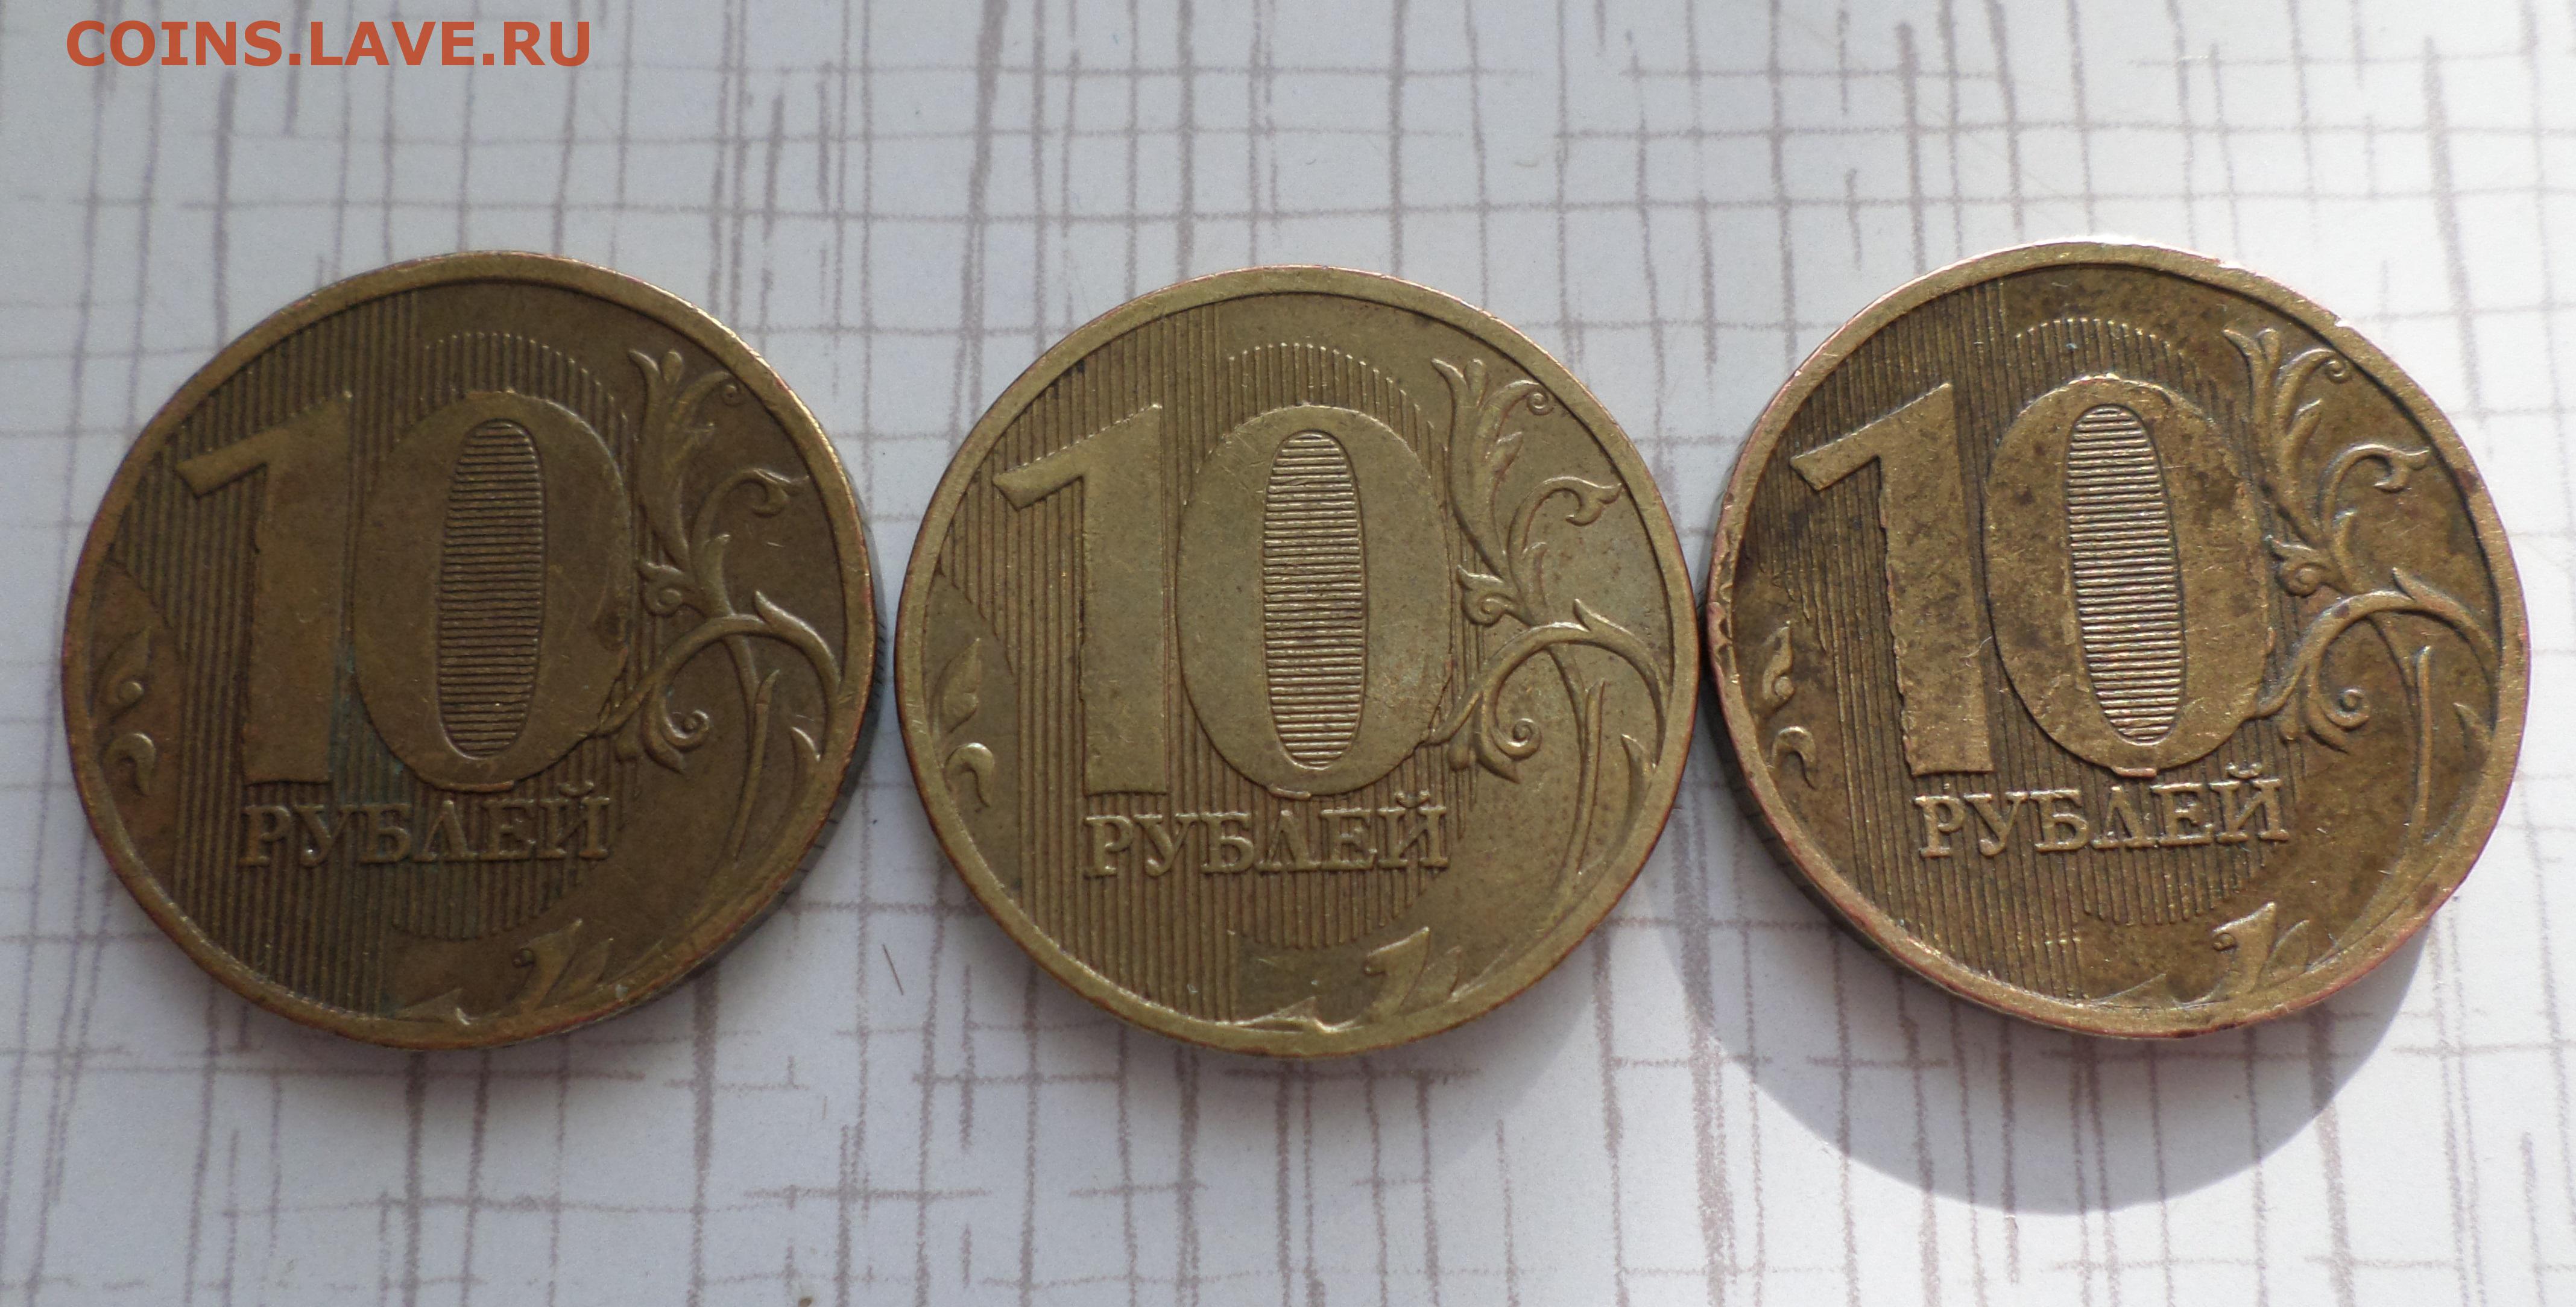 Десяти рублевые монеты дорогие 2012 года